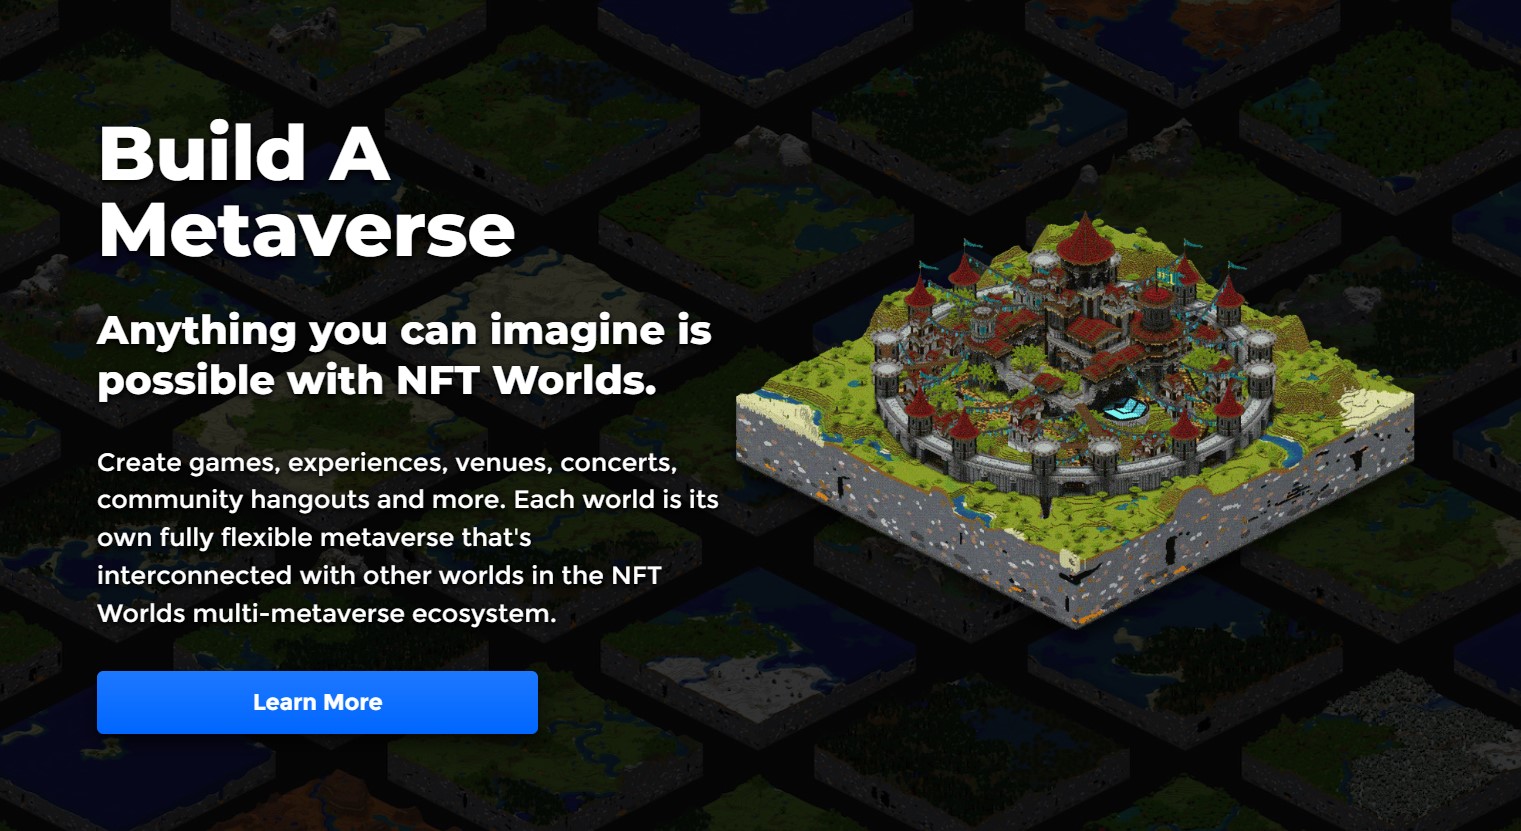 ผู้สร้าง Nft บน Minecraft ประกาศสร้างเกมใหม่เอง หลัง Minecraft แบนการใช้  Nft | Blognone